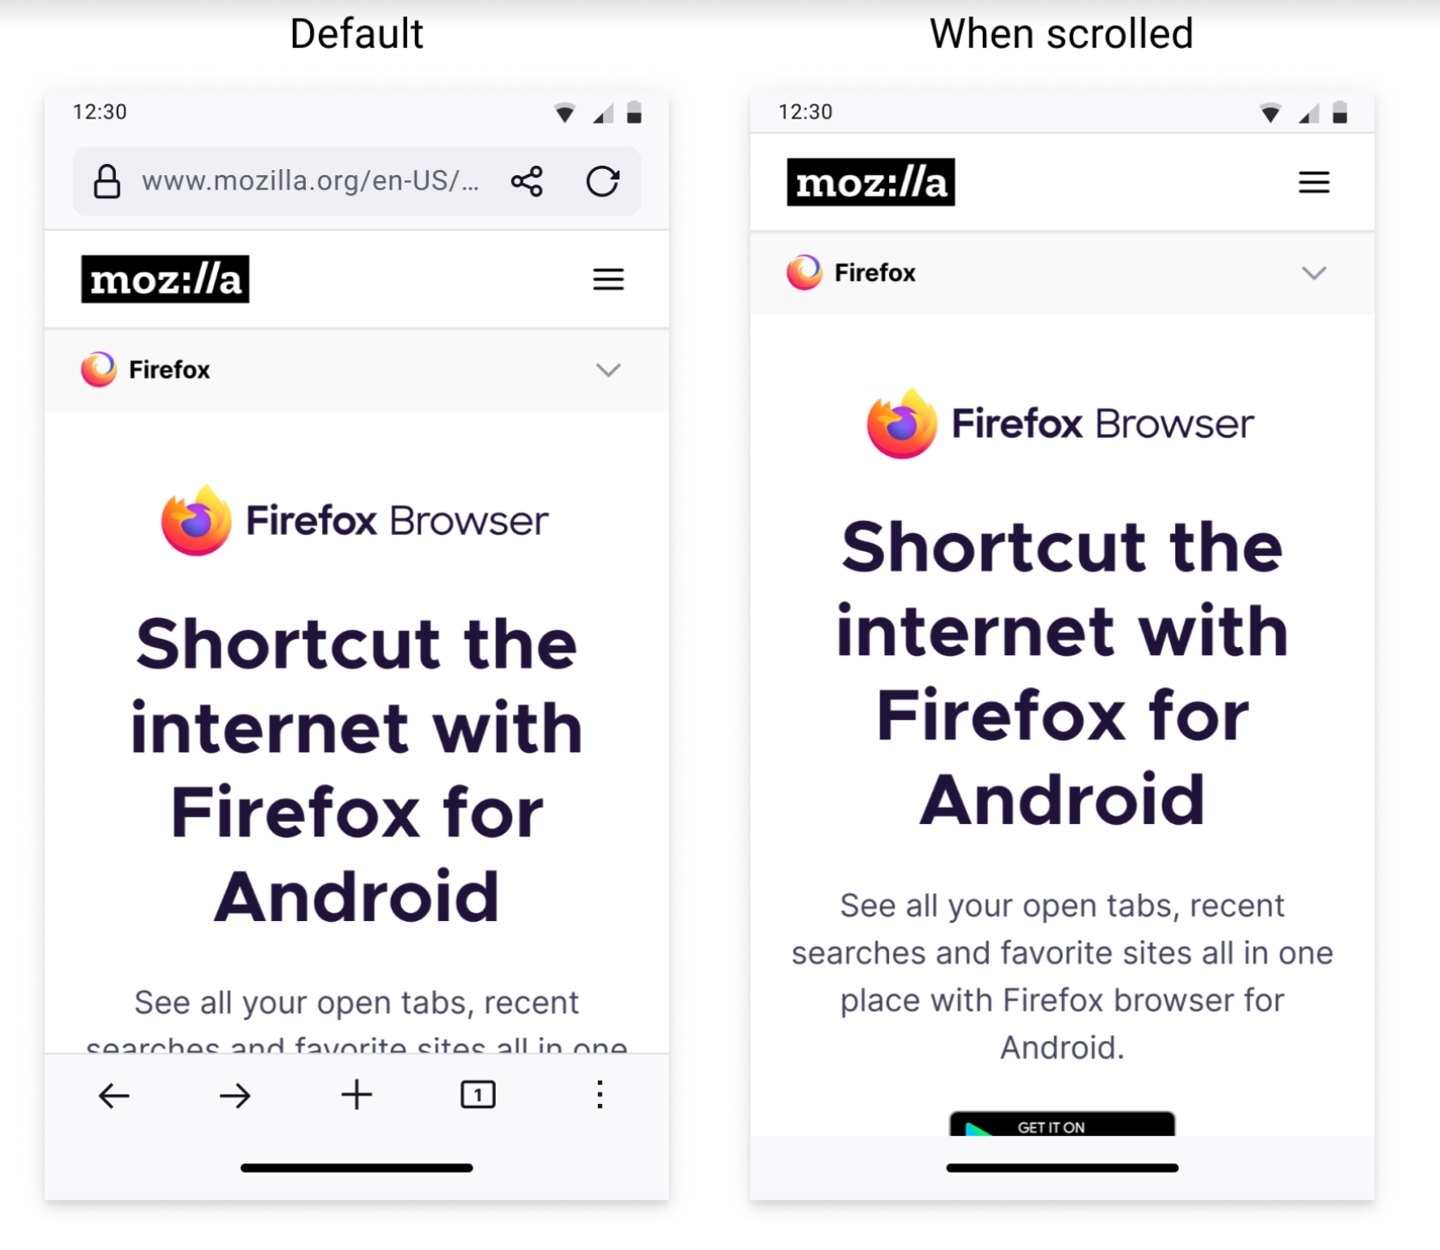 安卓版 Firefox 火狐浏览器将迎来全新导航设计，支持自动隐藏工具栏和地址栏